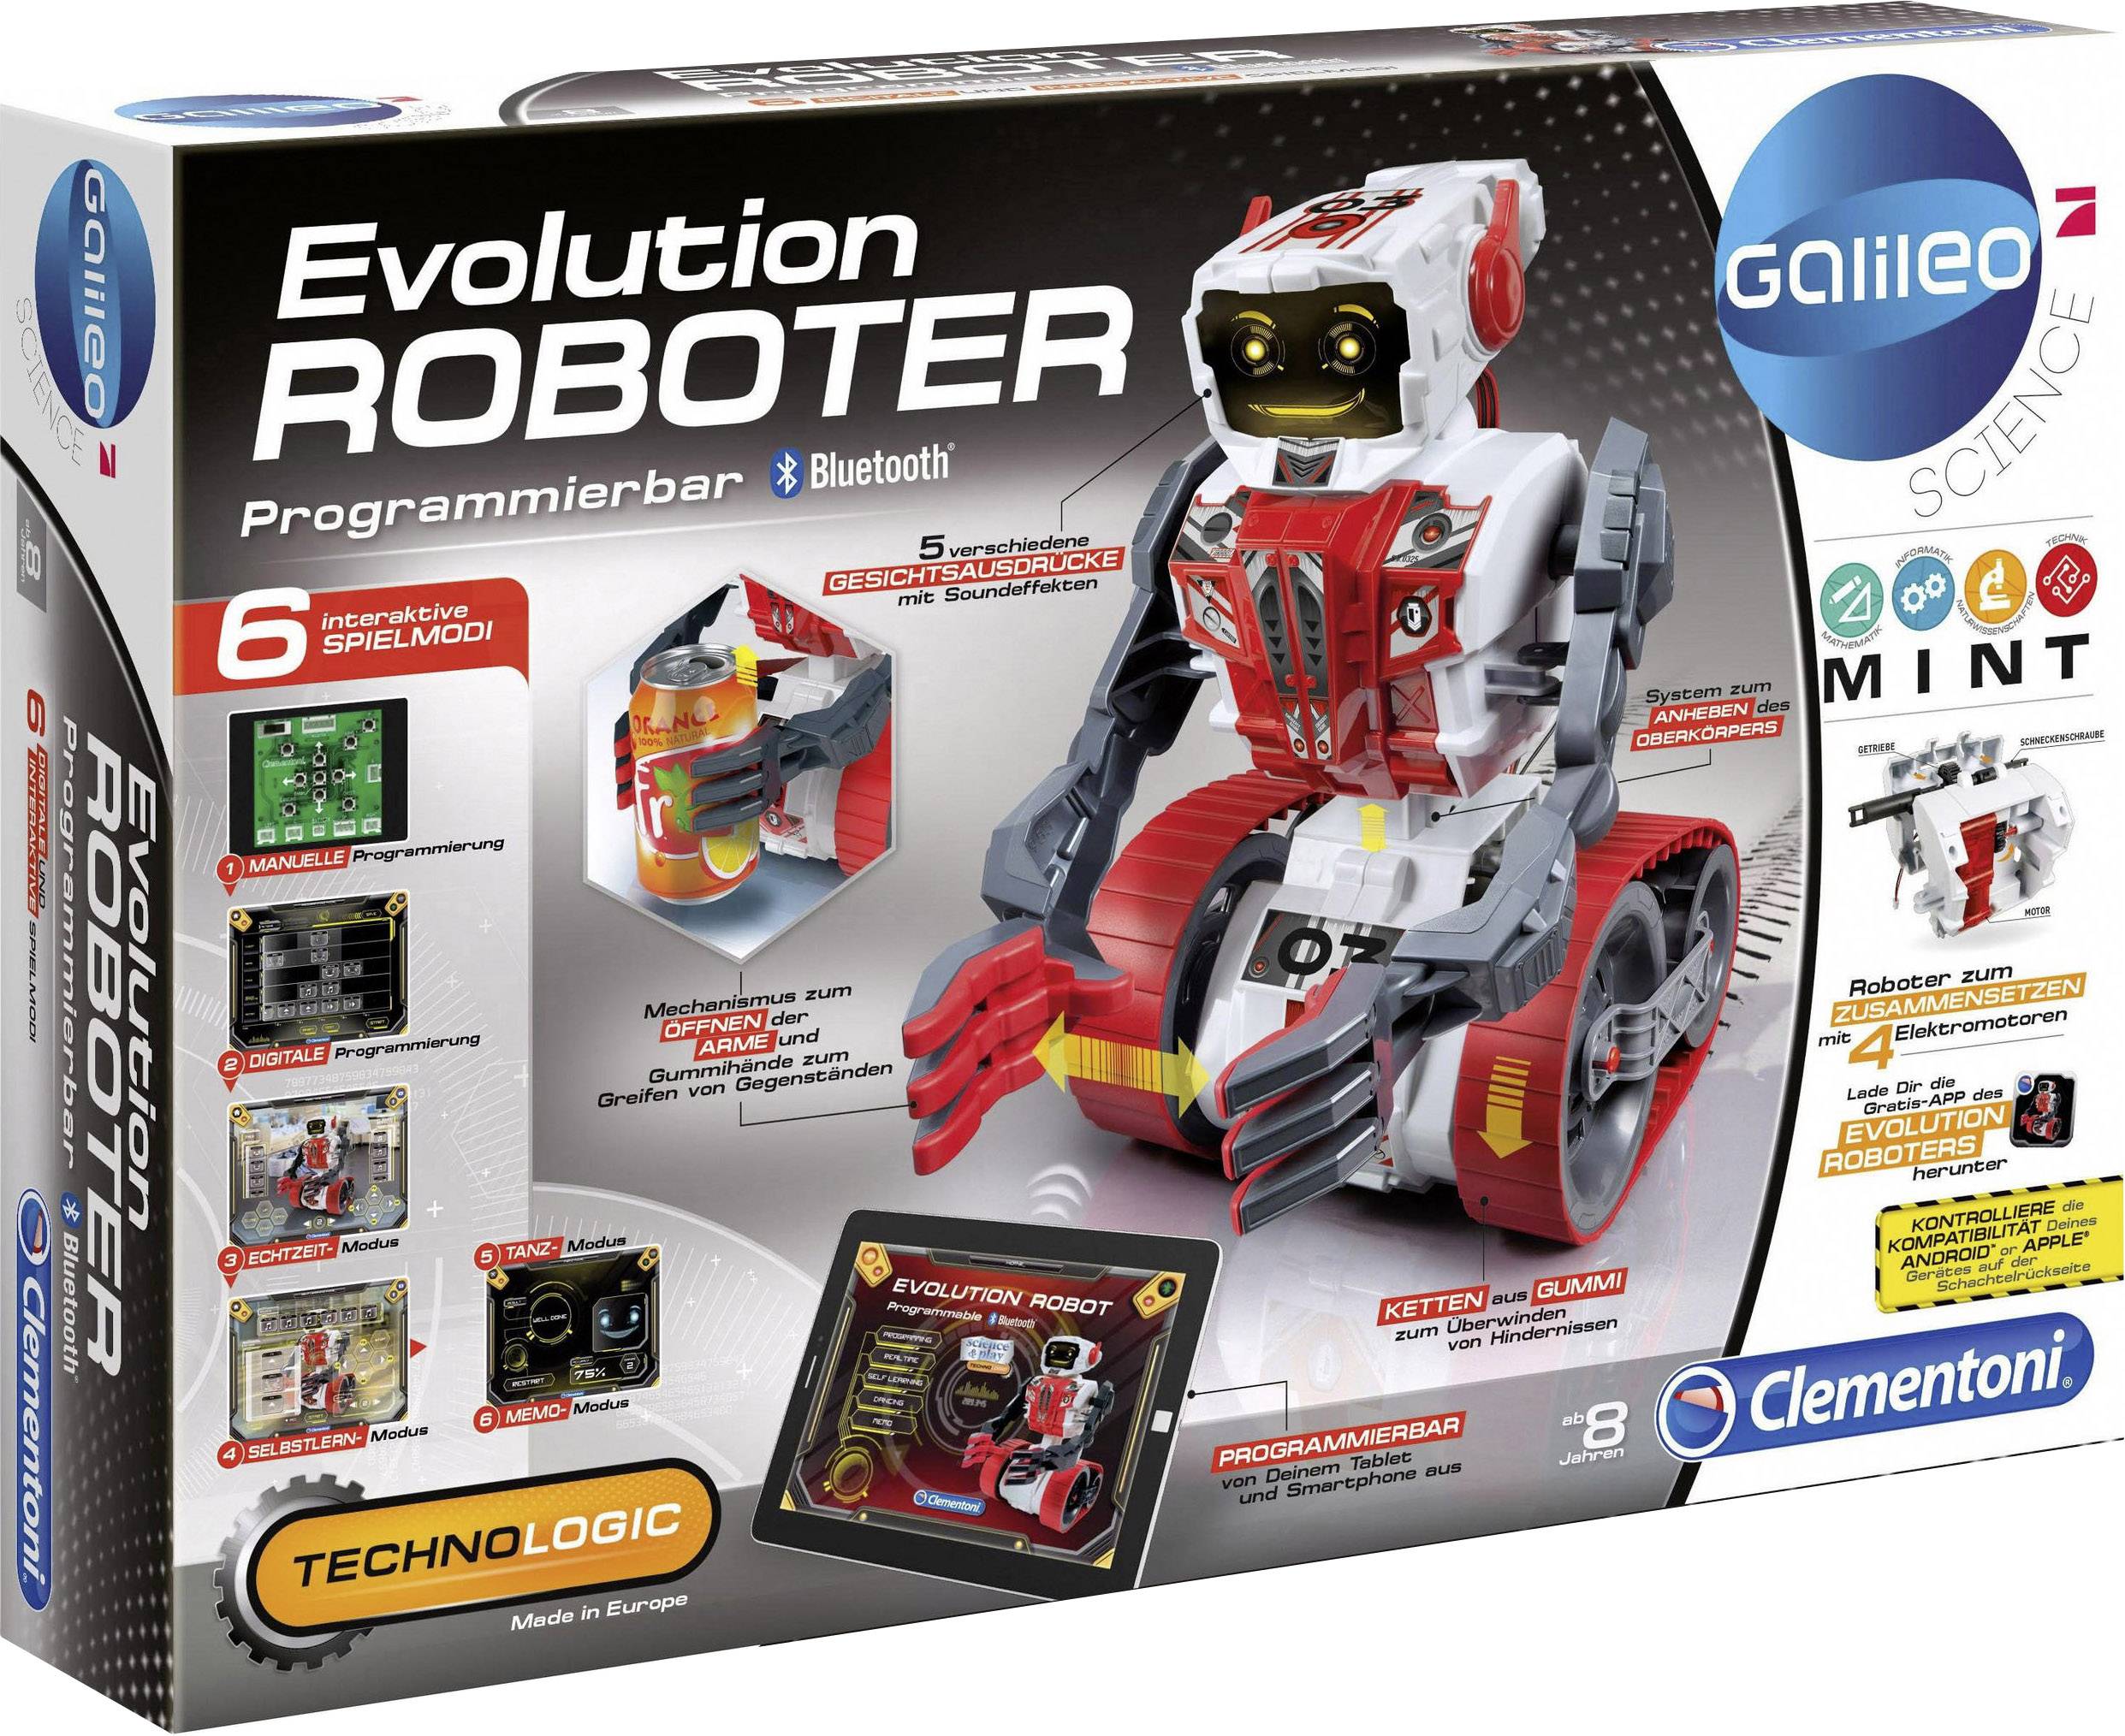 Justering blotte så meget Clementoni Robot assembly kit Galileo Evolution Roboter Assembly kit, Game  robot 38115456 | Conrad.com